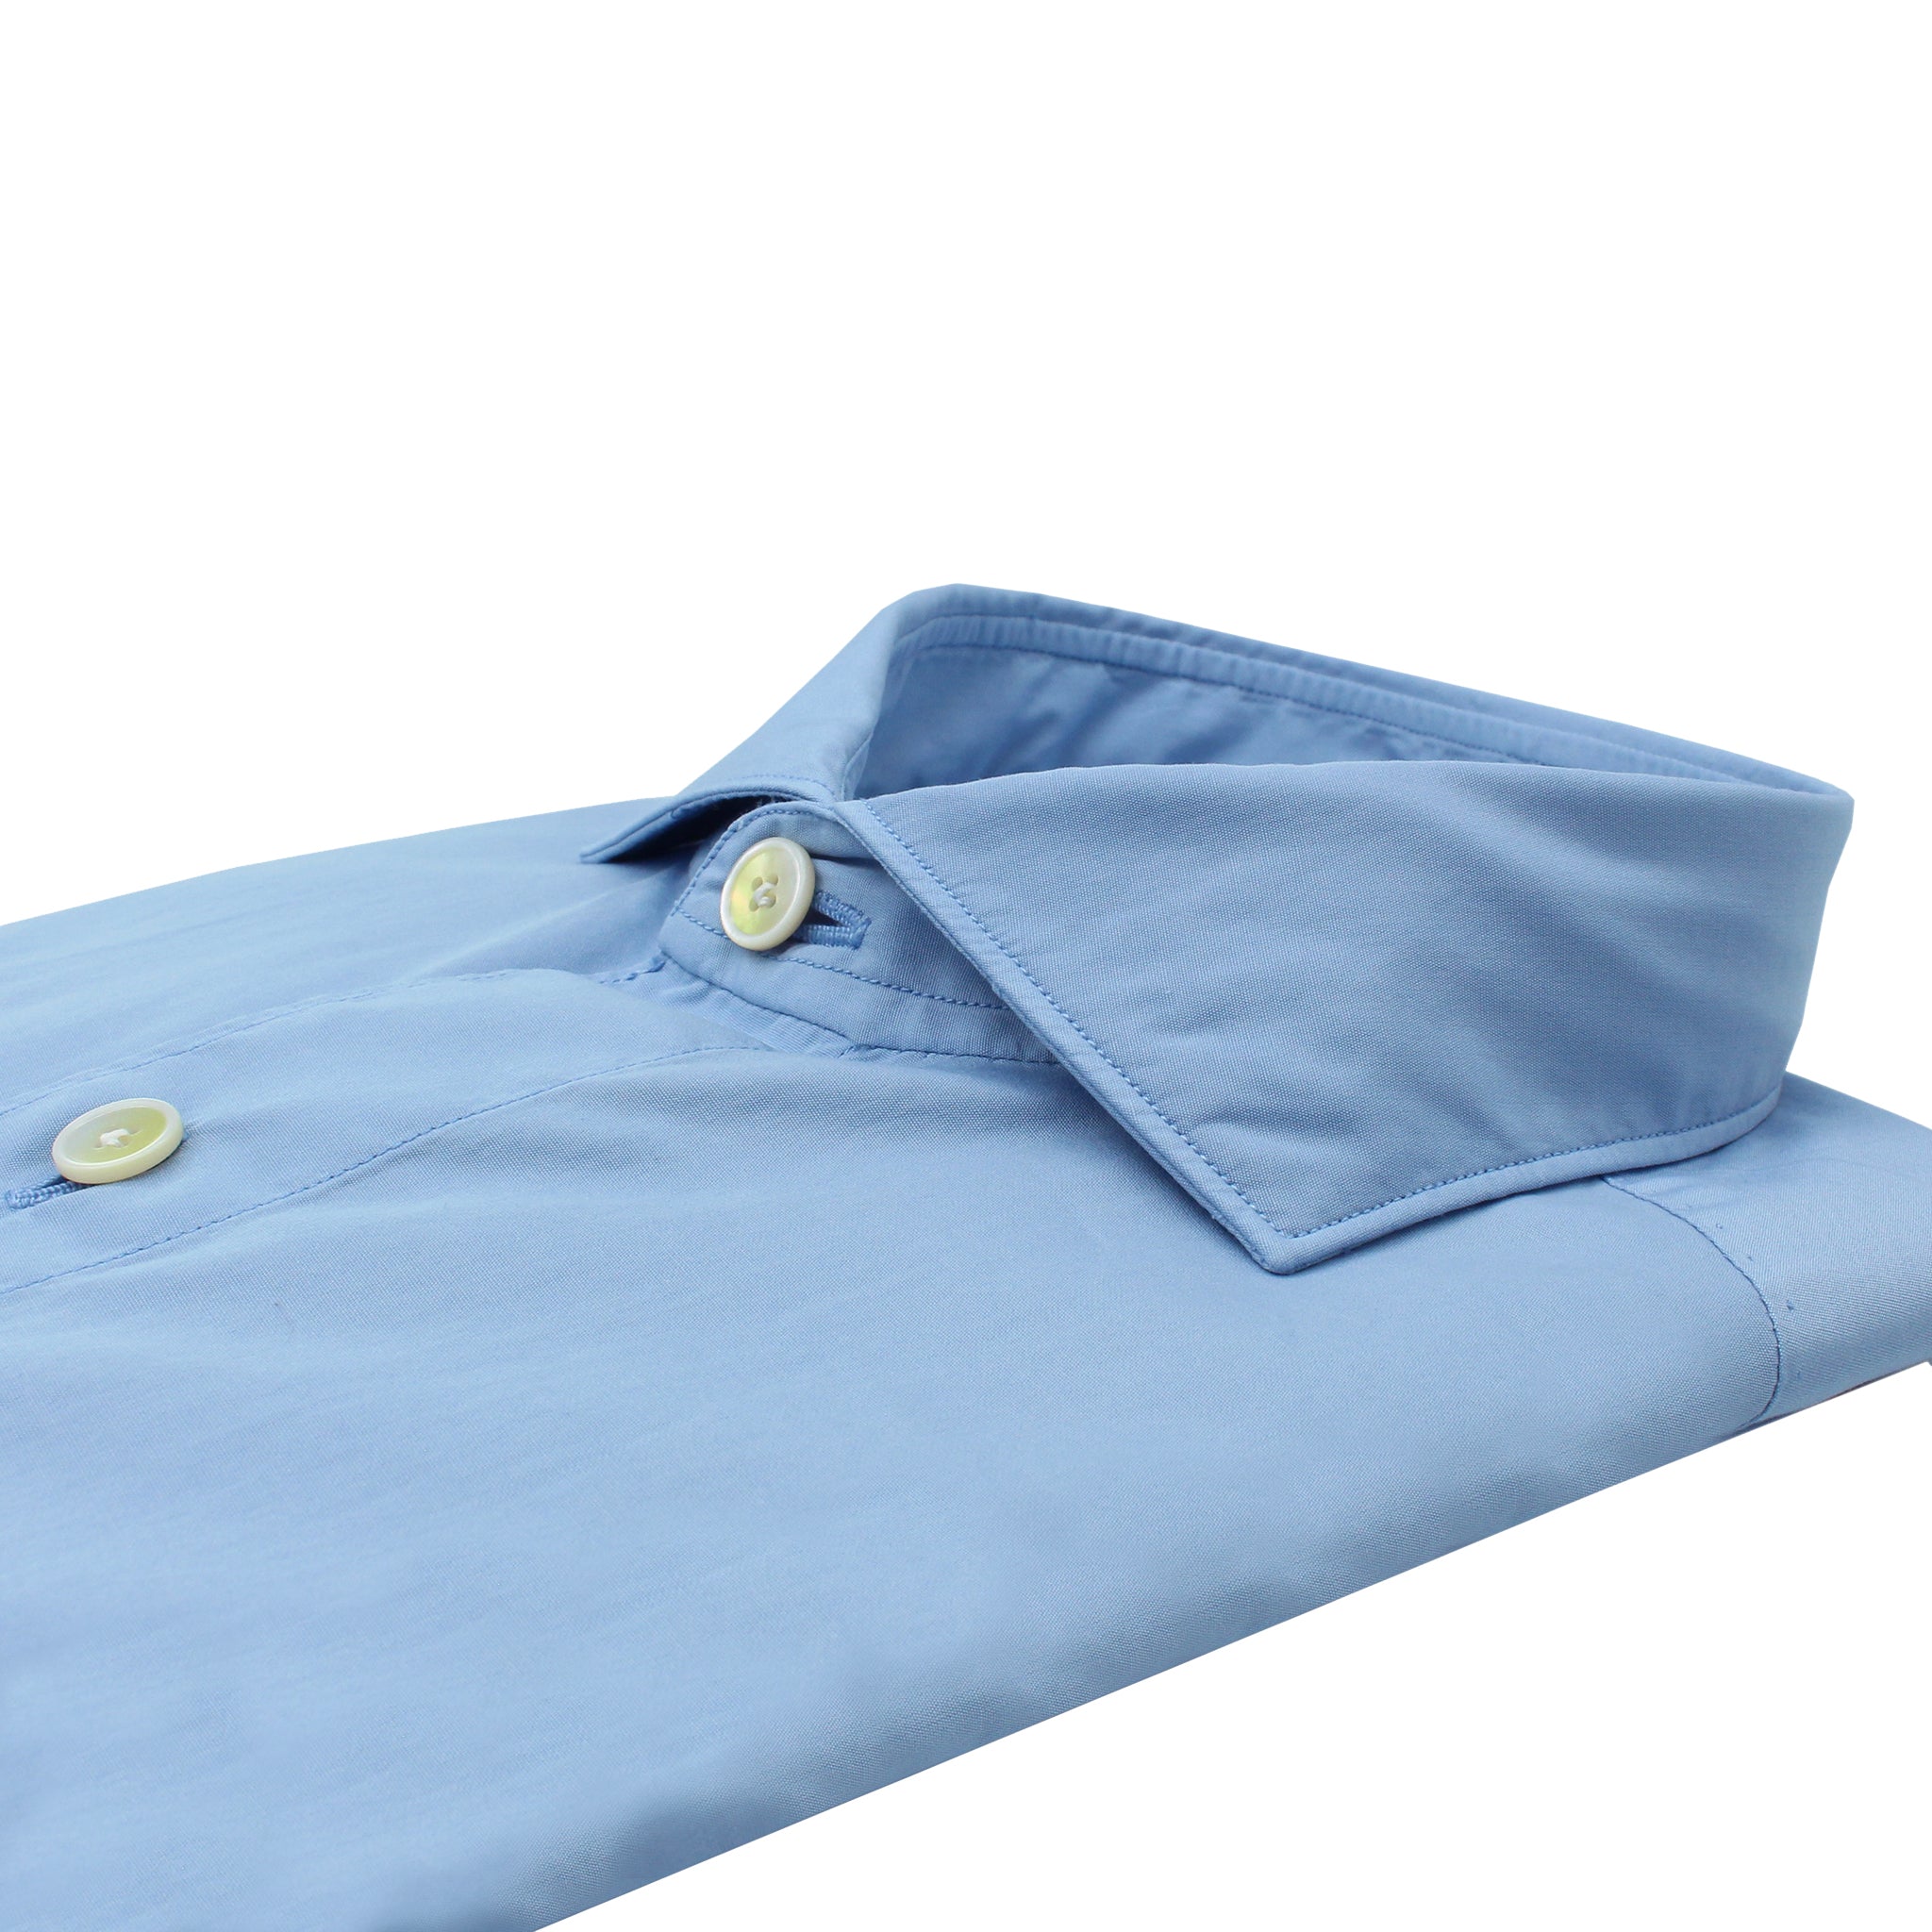 Camicia Classica Milano slim fit in cotone azzurro con taschino